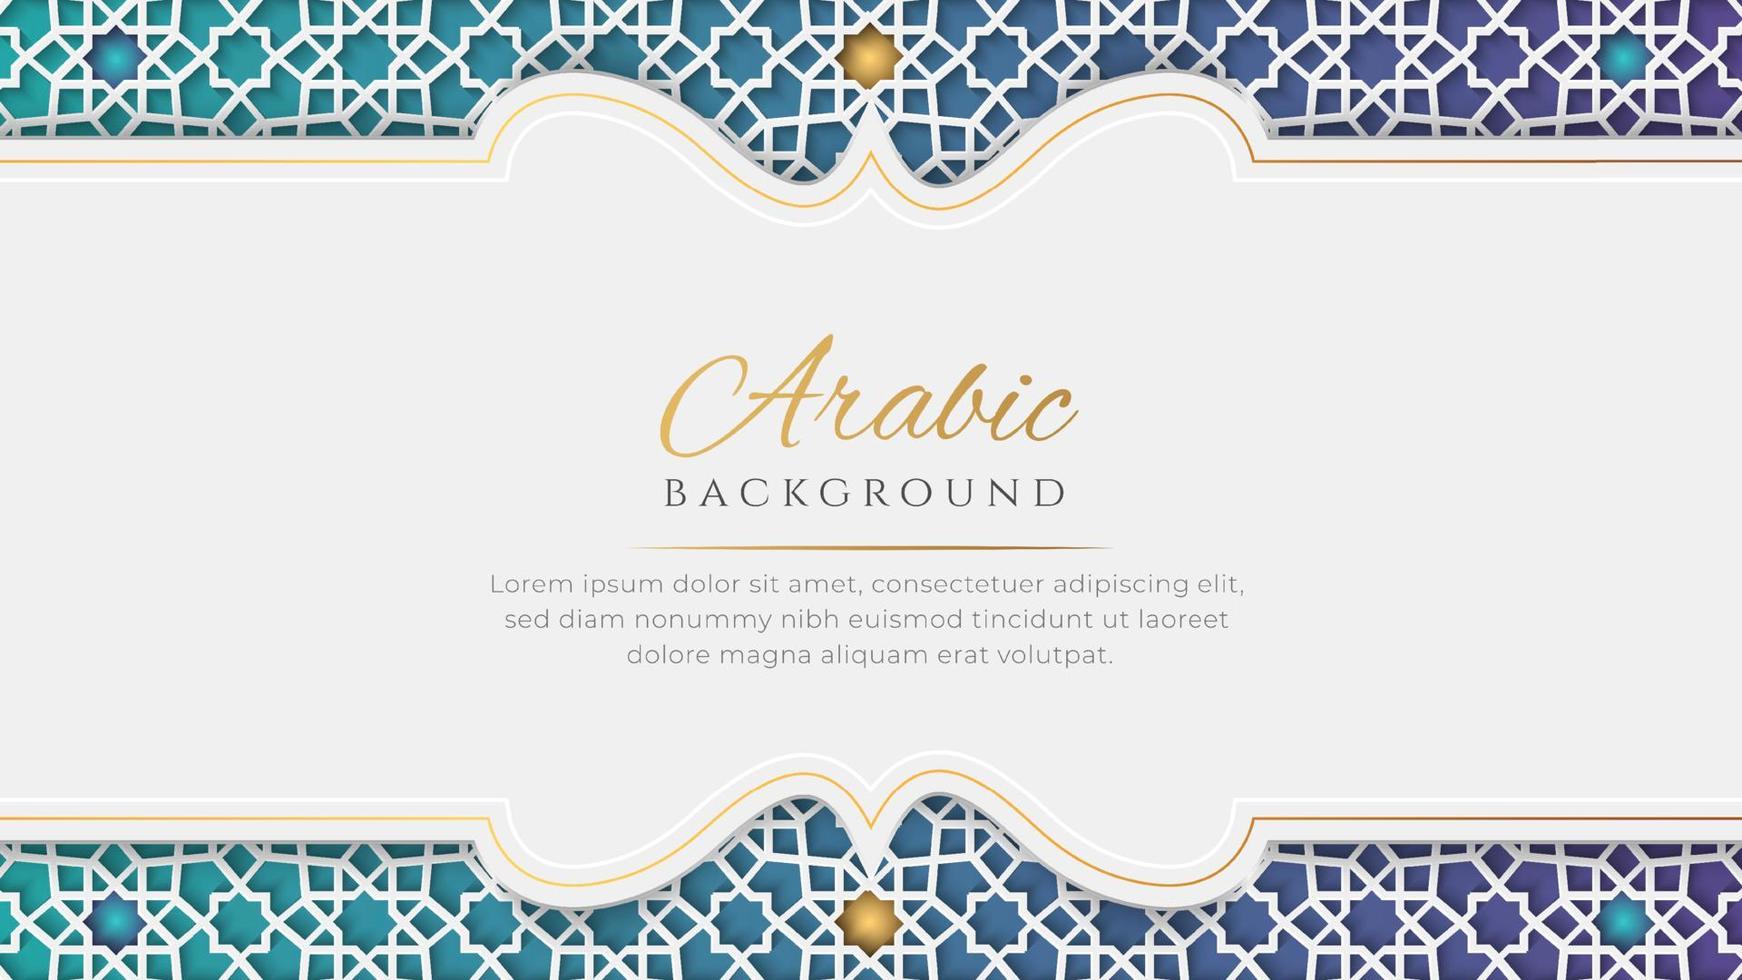 weißer und blauer luxus islamischer bogenhintergrund mit dekorativem ornamentmuster vektor